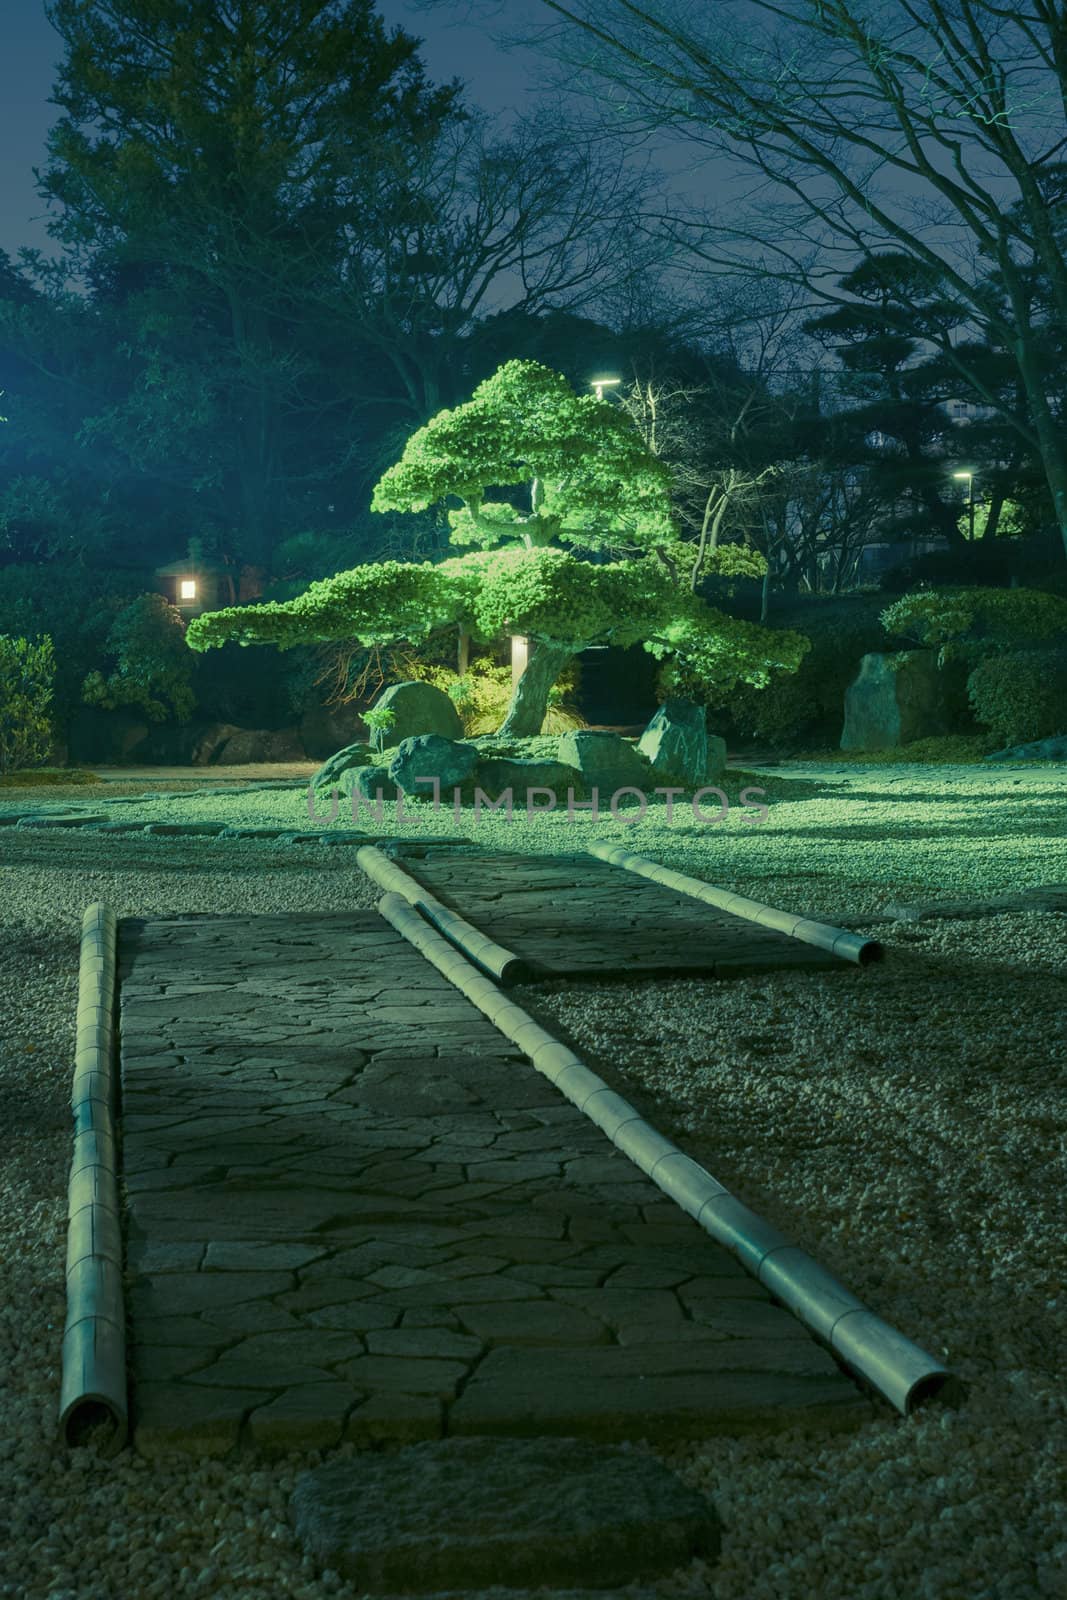 pine tree inside Japanese zen garden with scenic night illumination